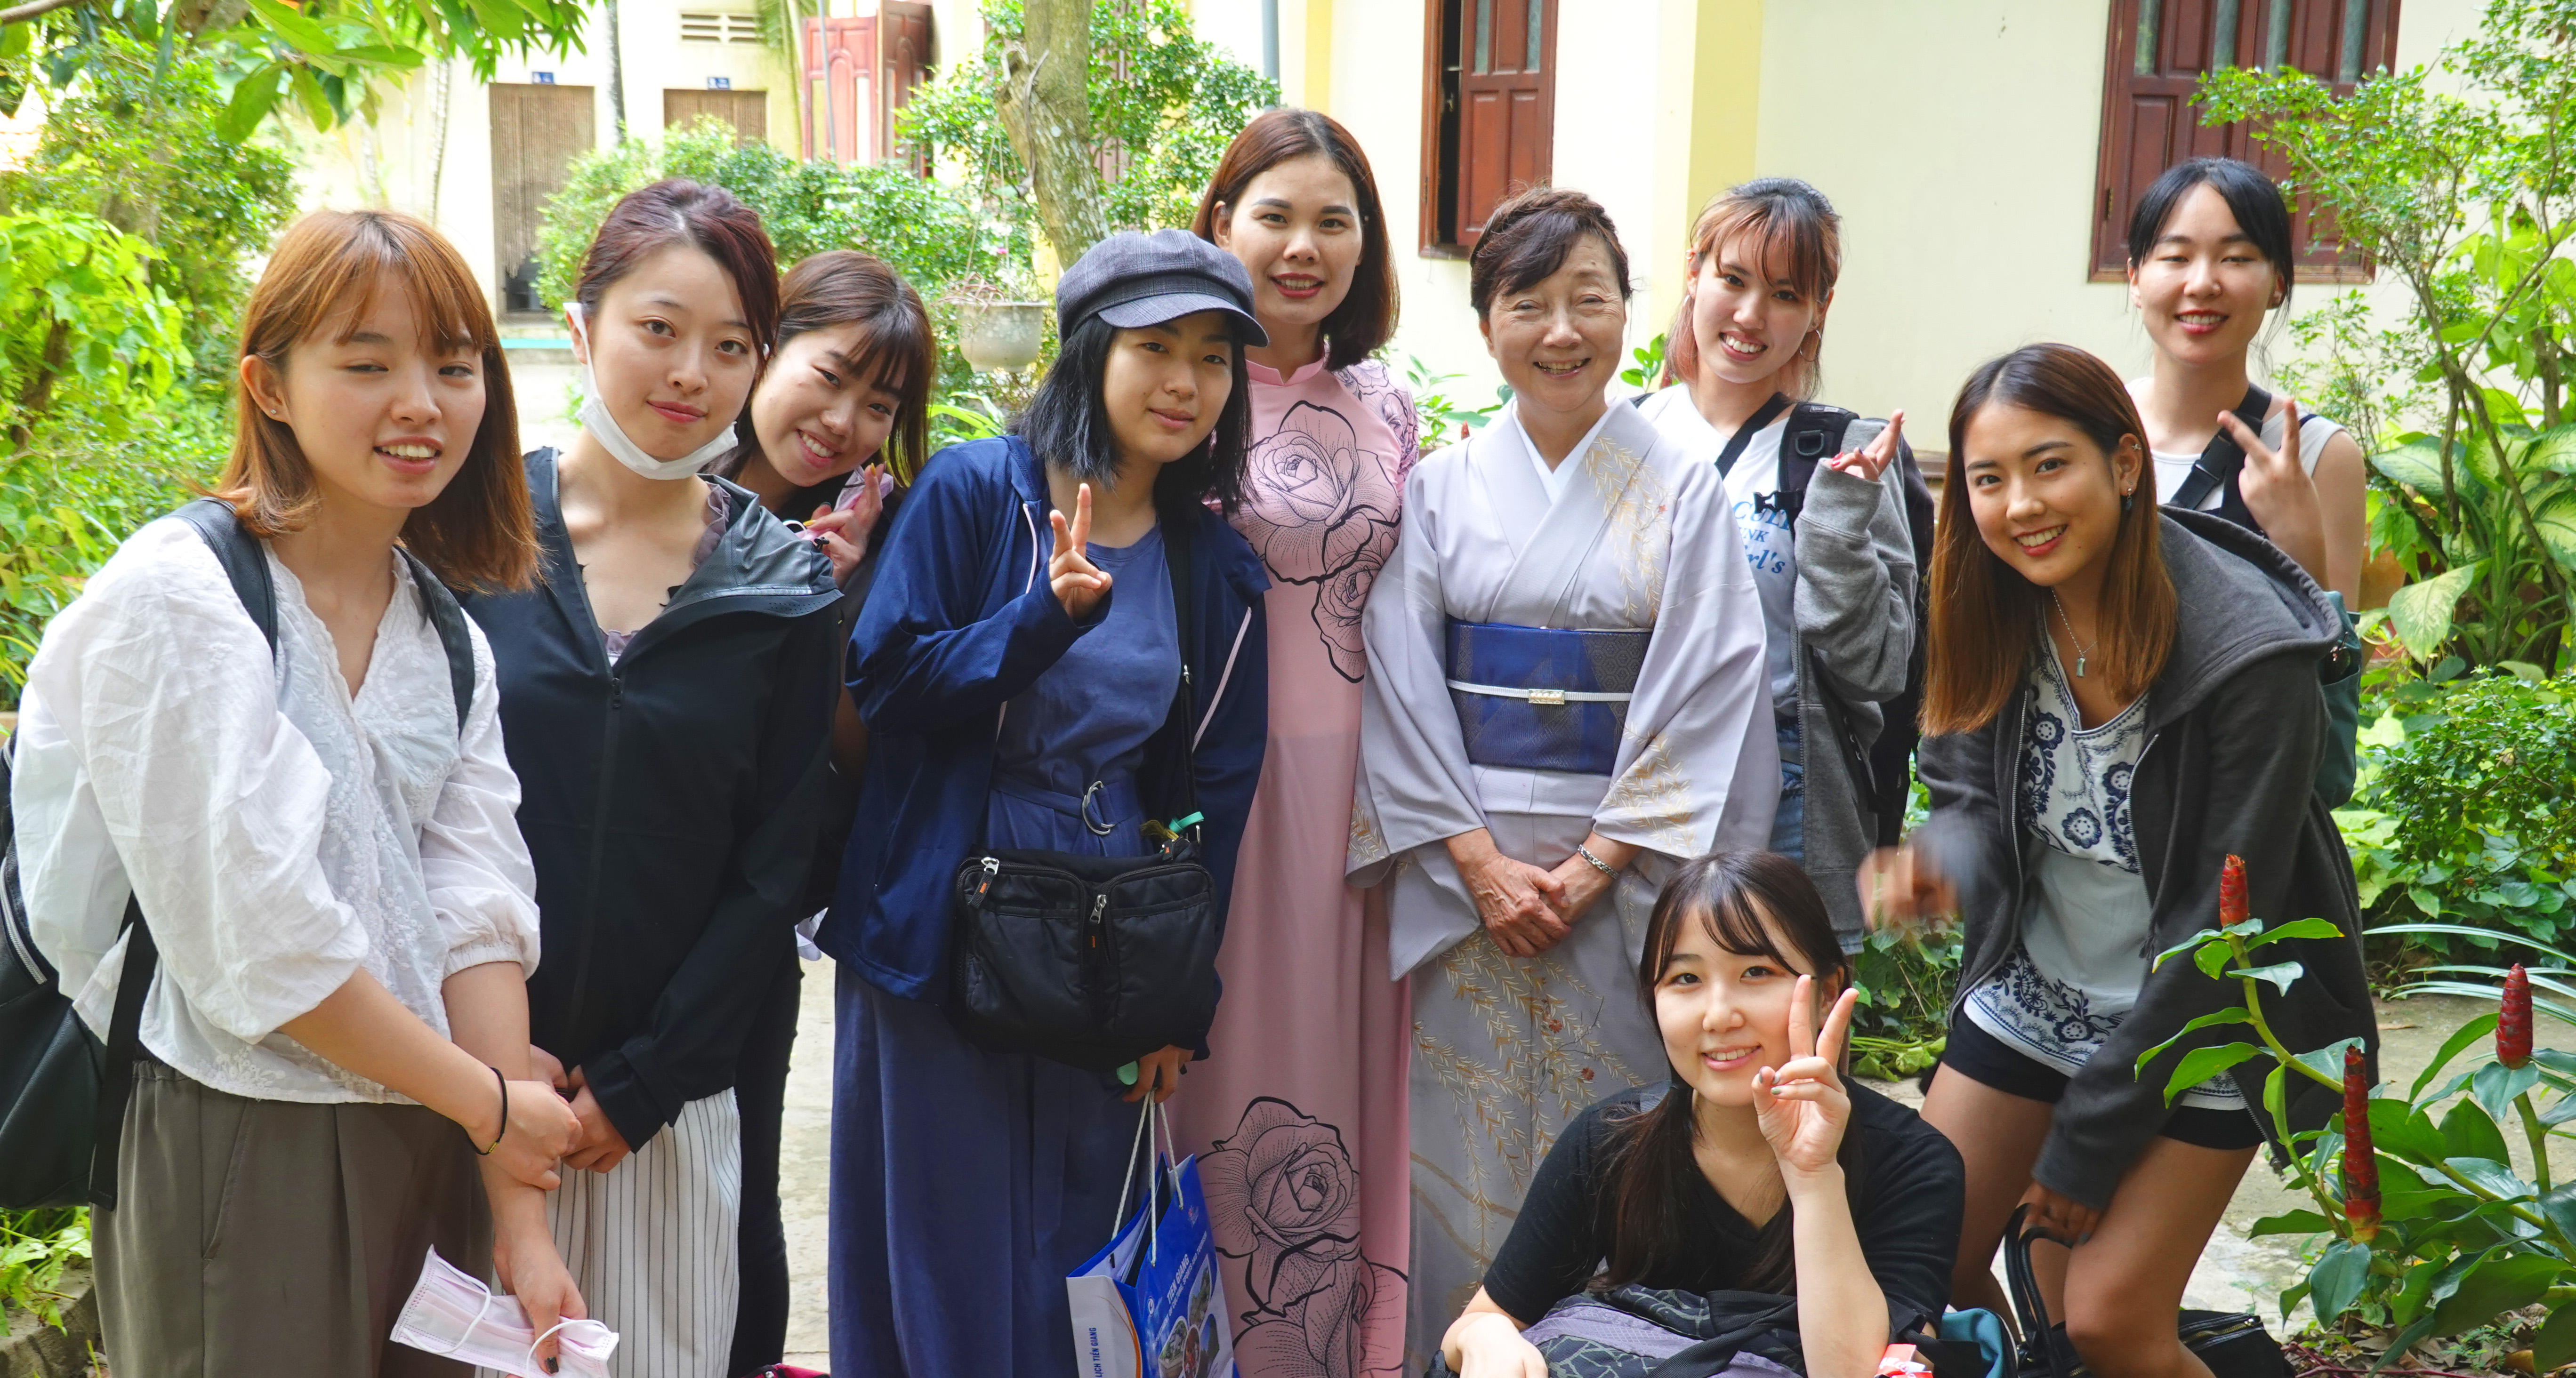 昭和女子大学国際学科ベトナム留学生8名がハノイから参加 昭和女子大学 国際文化研究所 昭和女子大学